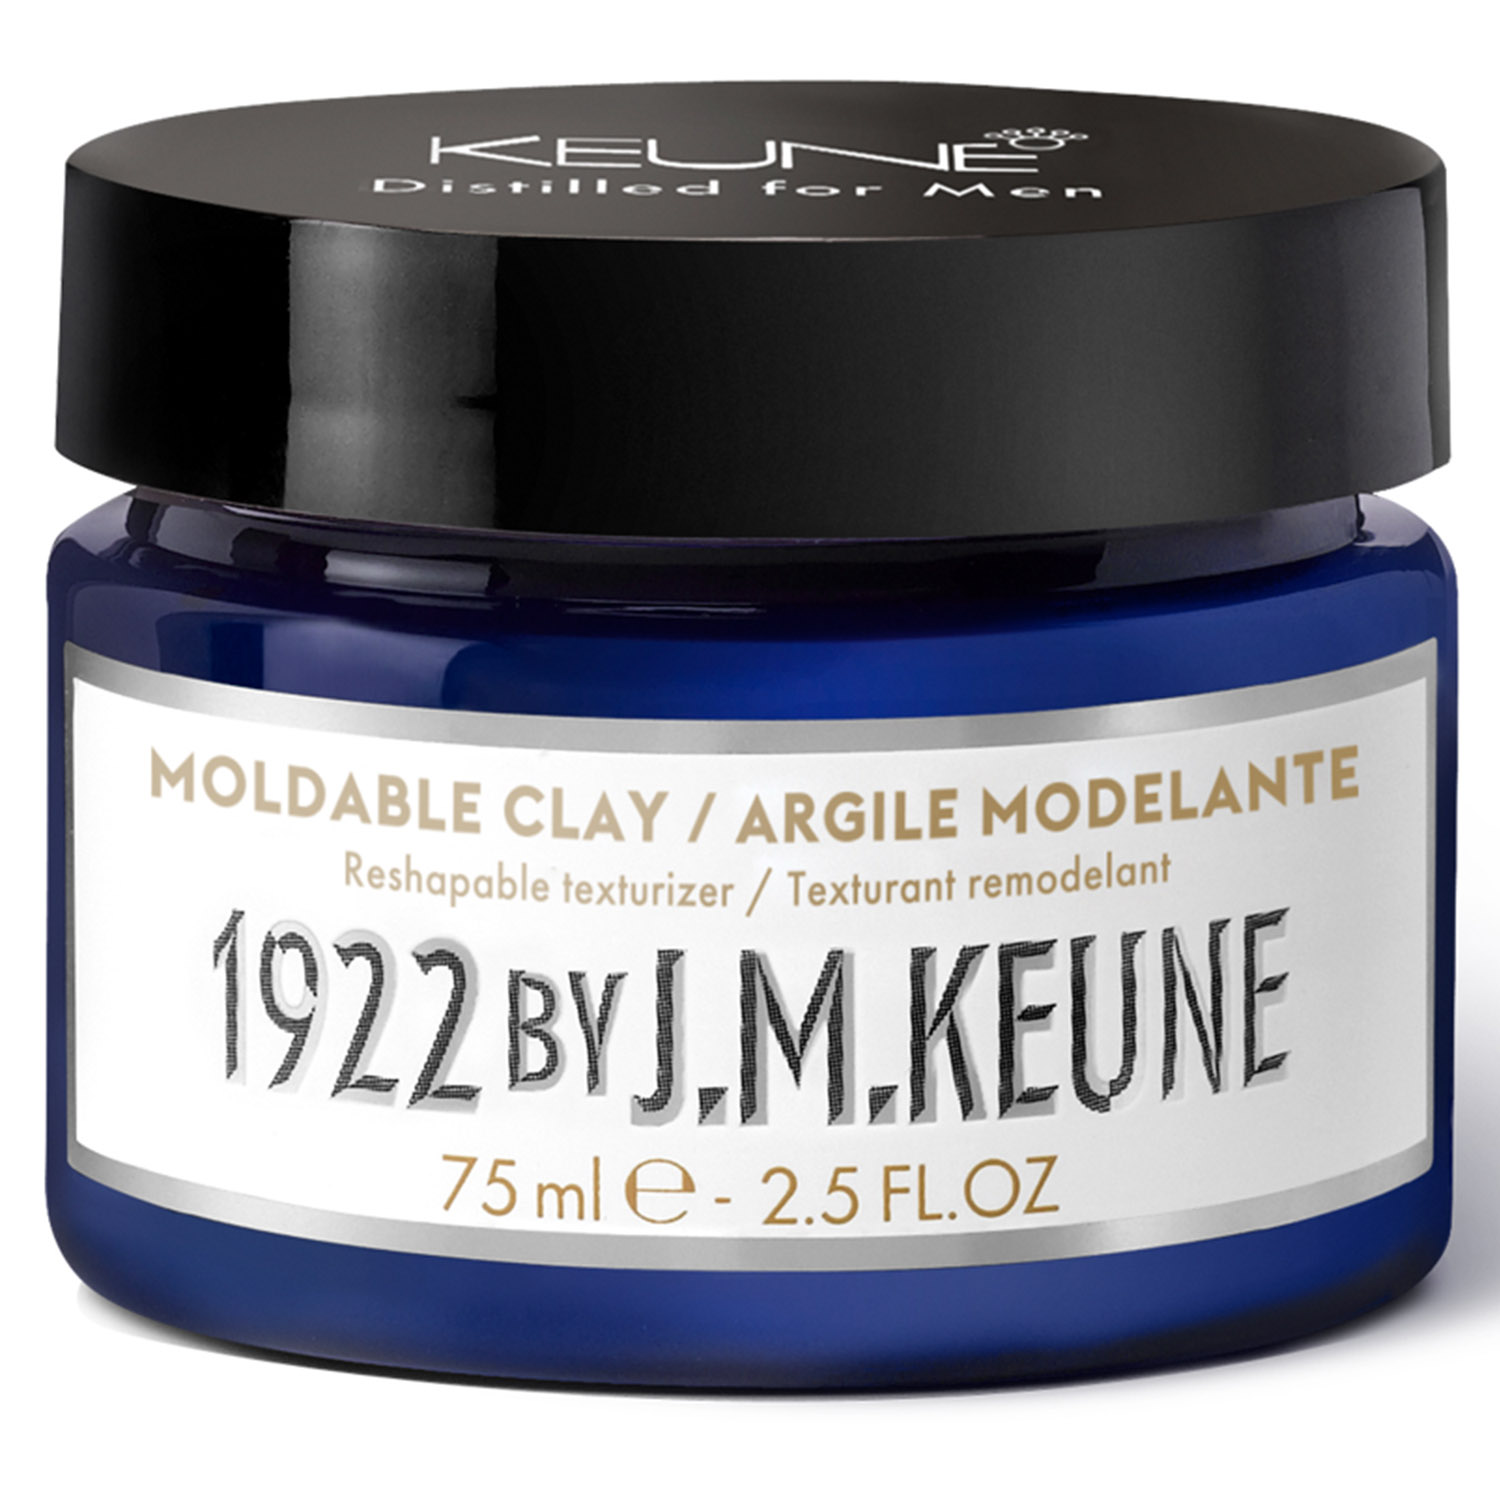 Keune Моделирующая глина для укладки волос Moldable Clay, 75 мл (Keune, 1922 by J.M. Keune) keune 1922 by j m keune кондиционер для волос и бороды essential универсальный 250 мл